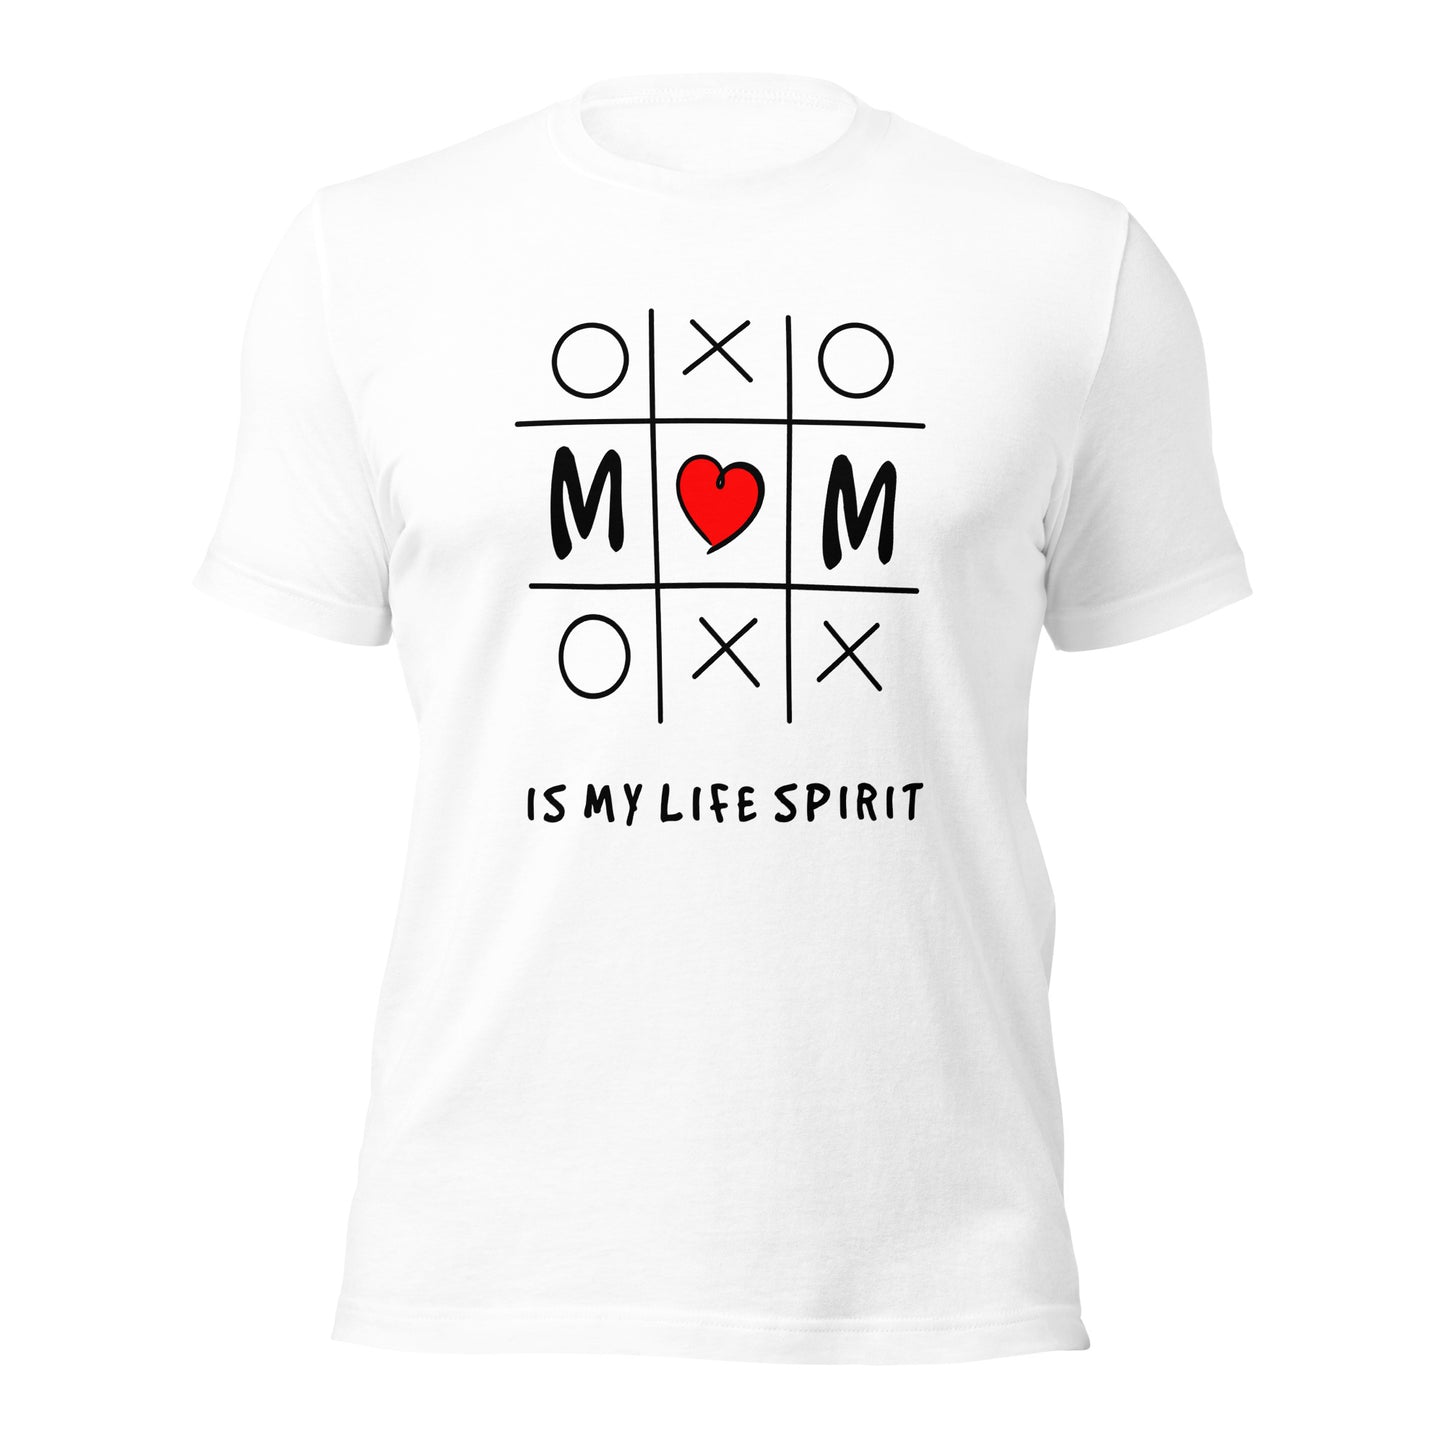 T-Shirt zum Muttertag, Mama, Mom